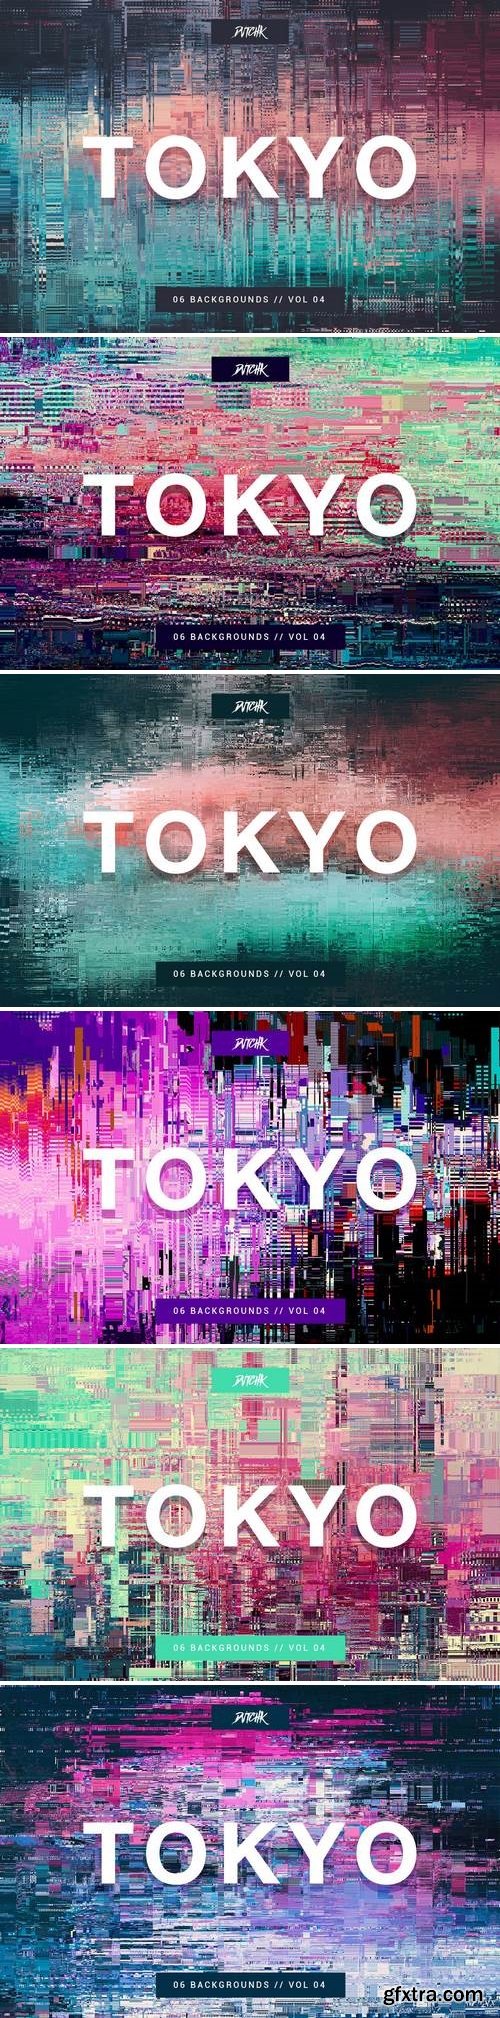 Tokyo| City Glitch Backgrounds | Vol. 04